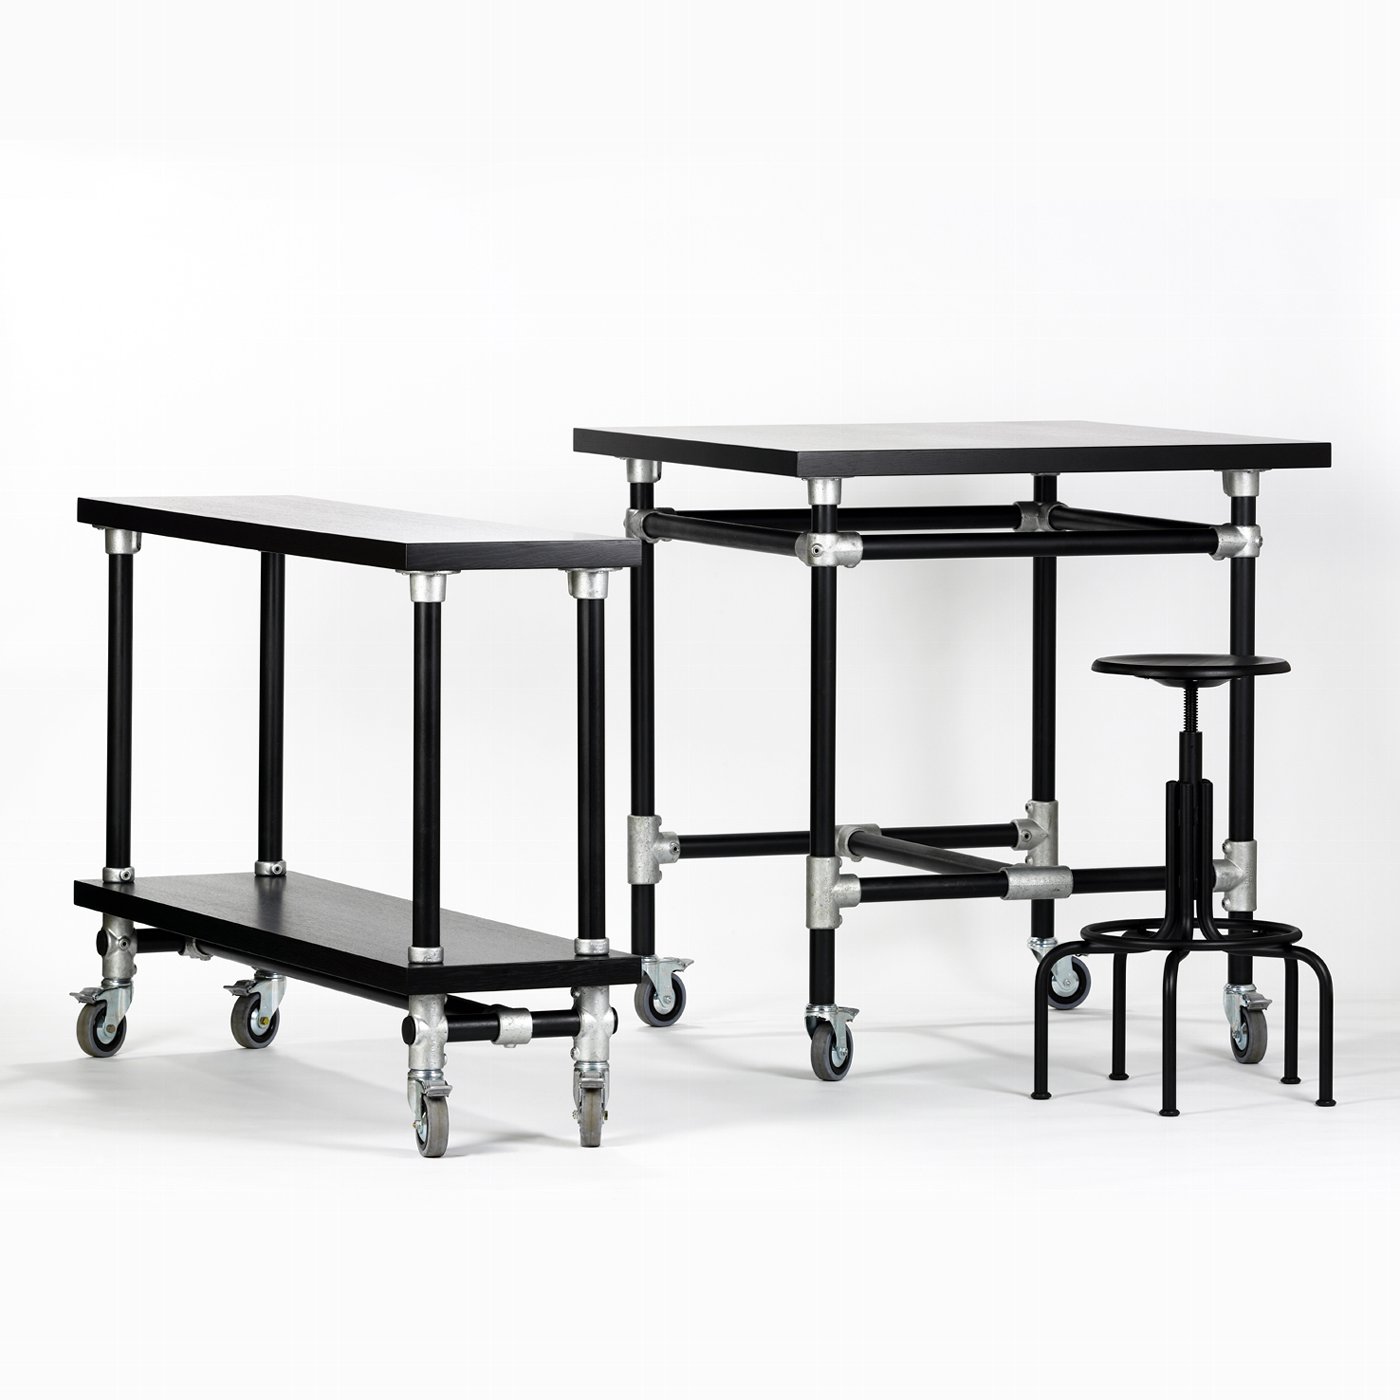 Industrie table black 1oox1oo H105cm